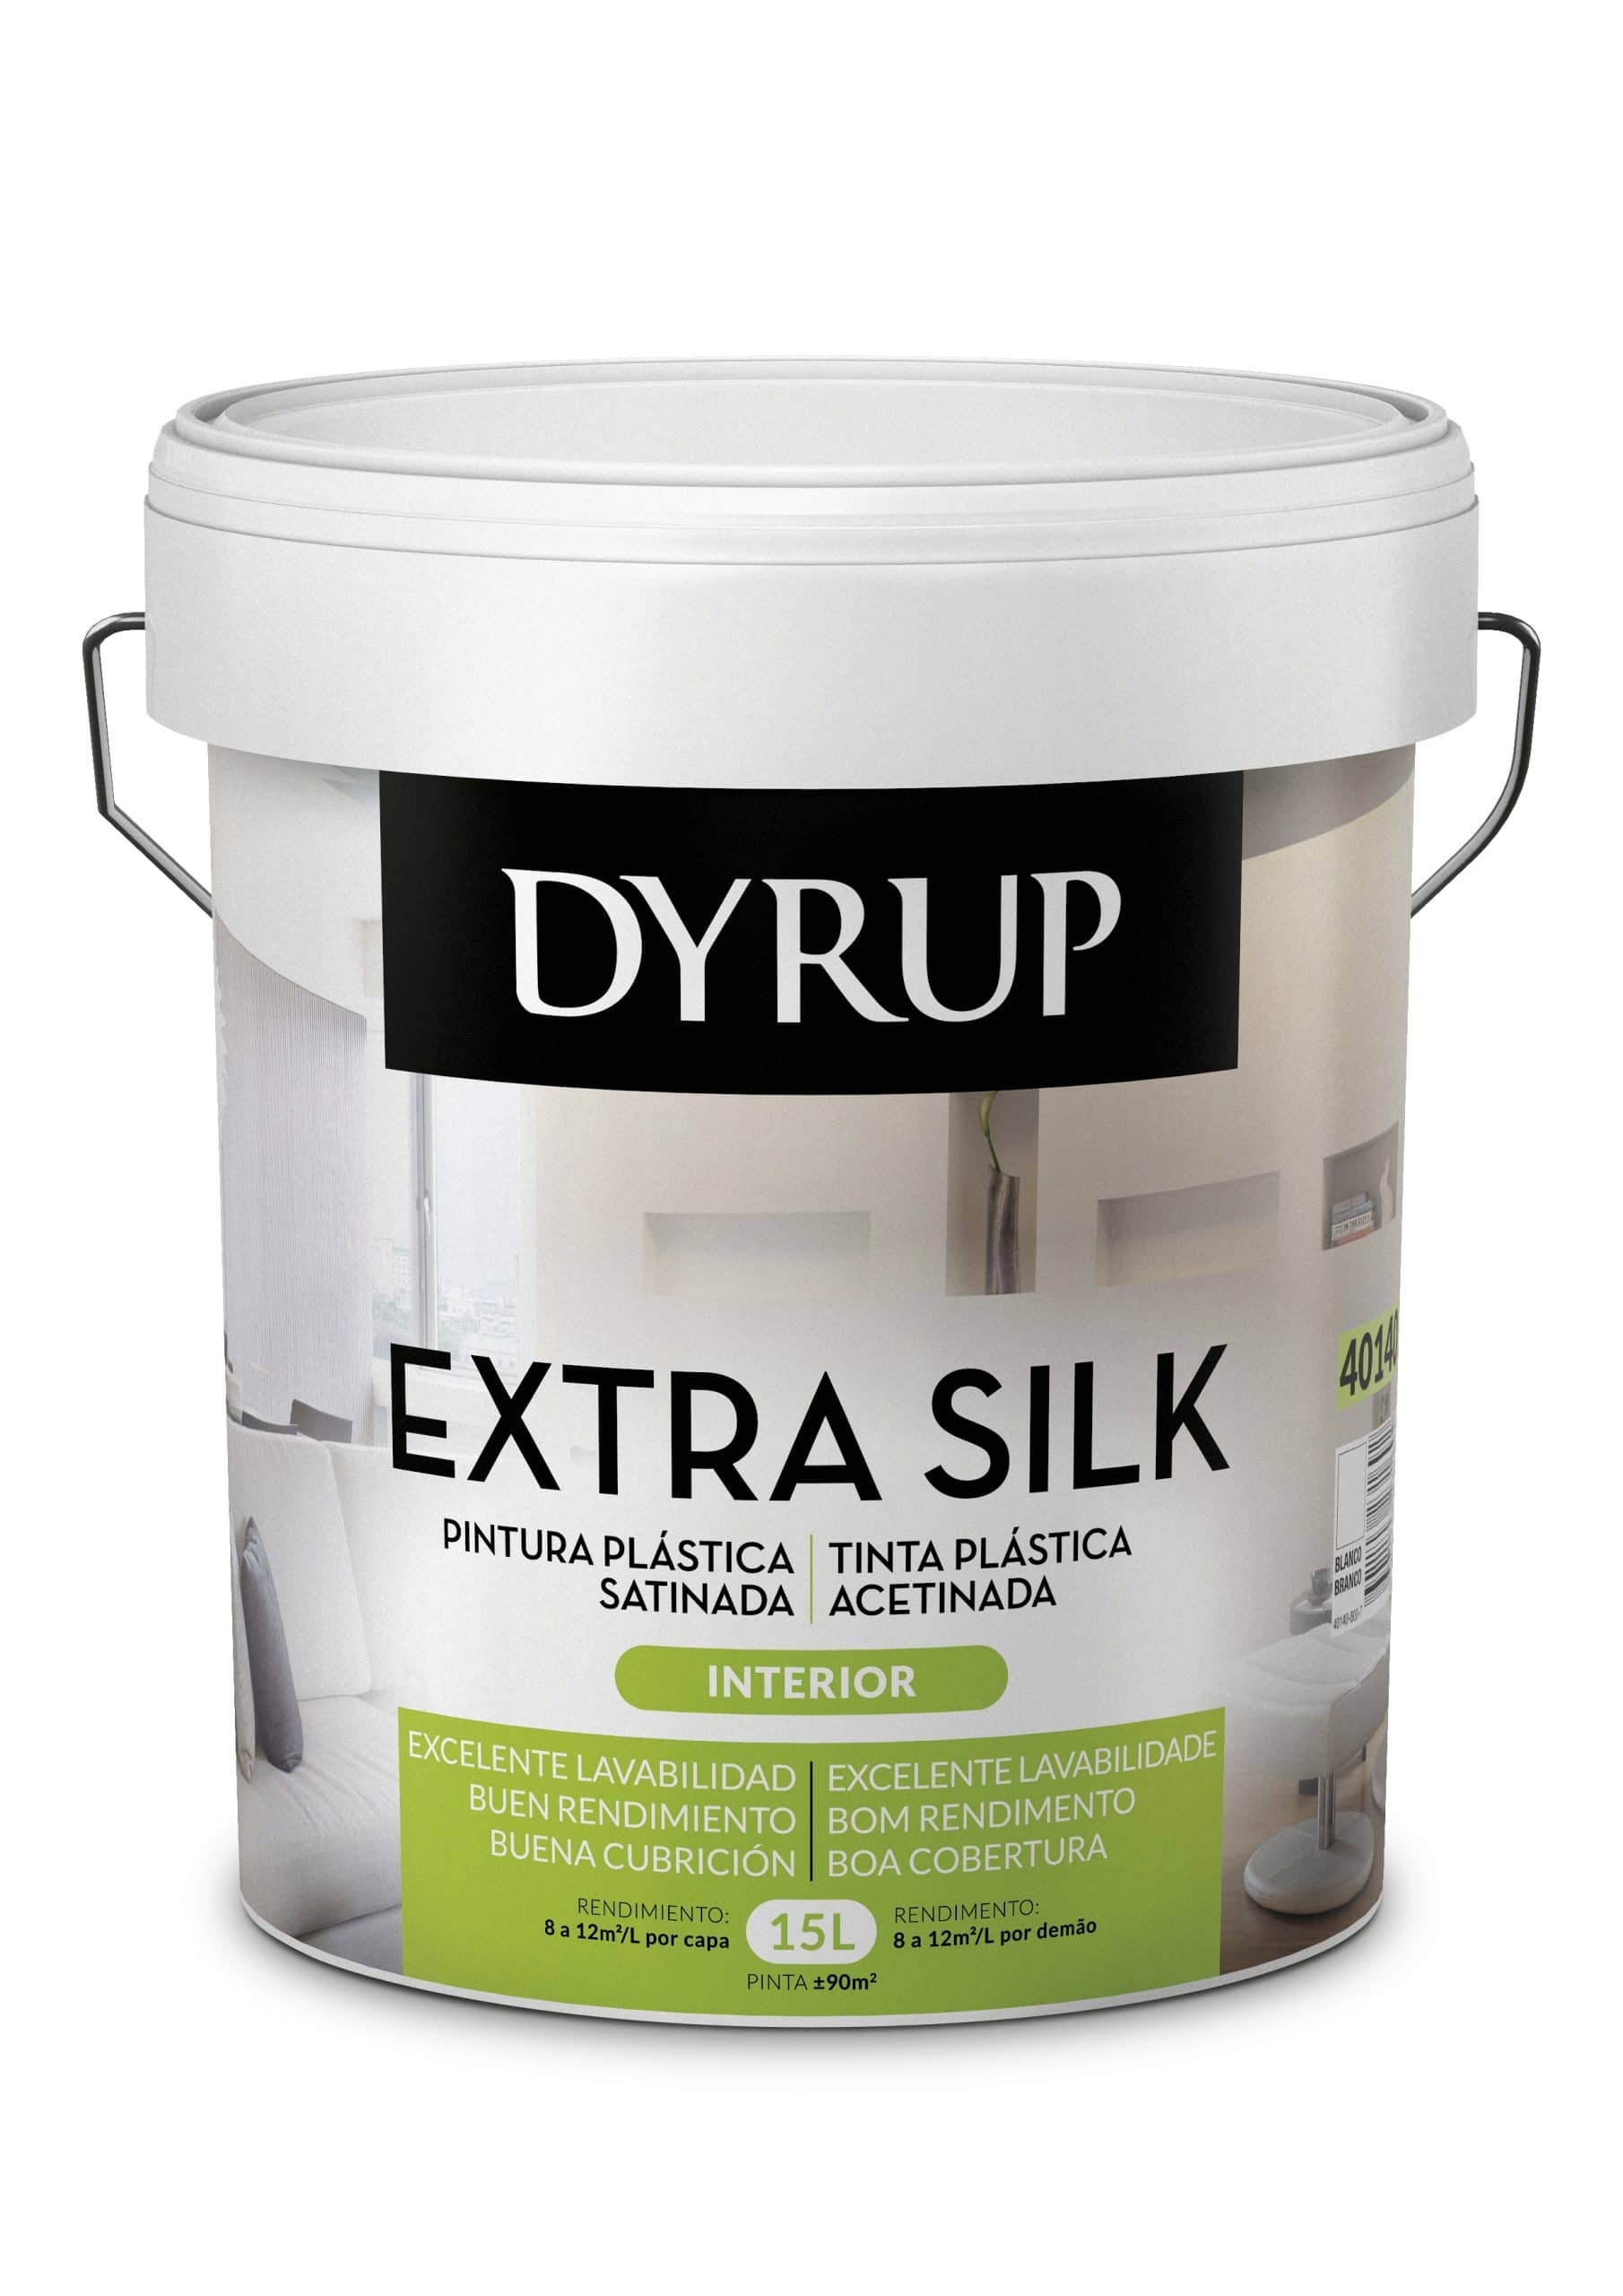 DYRUP - Extrasilk Tinta Acetinada